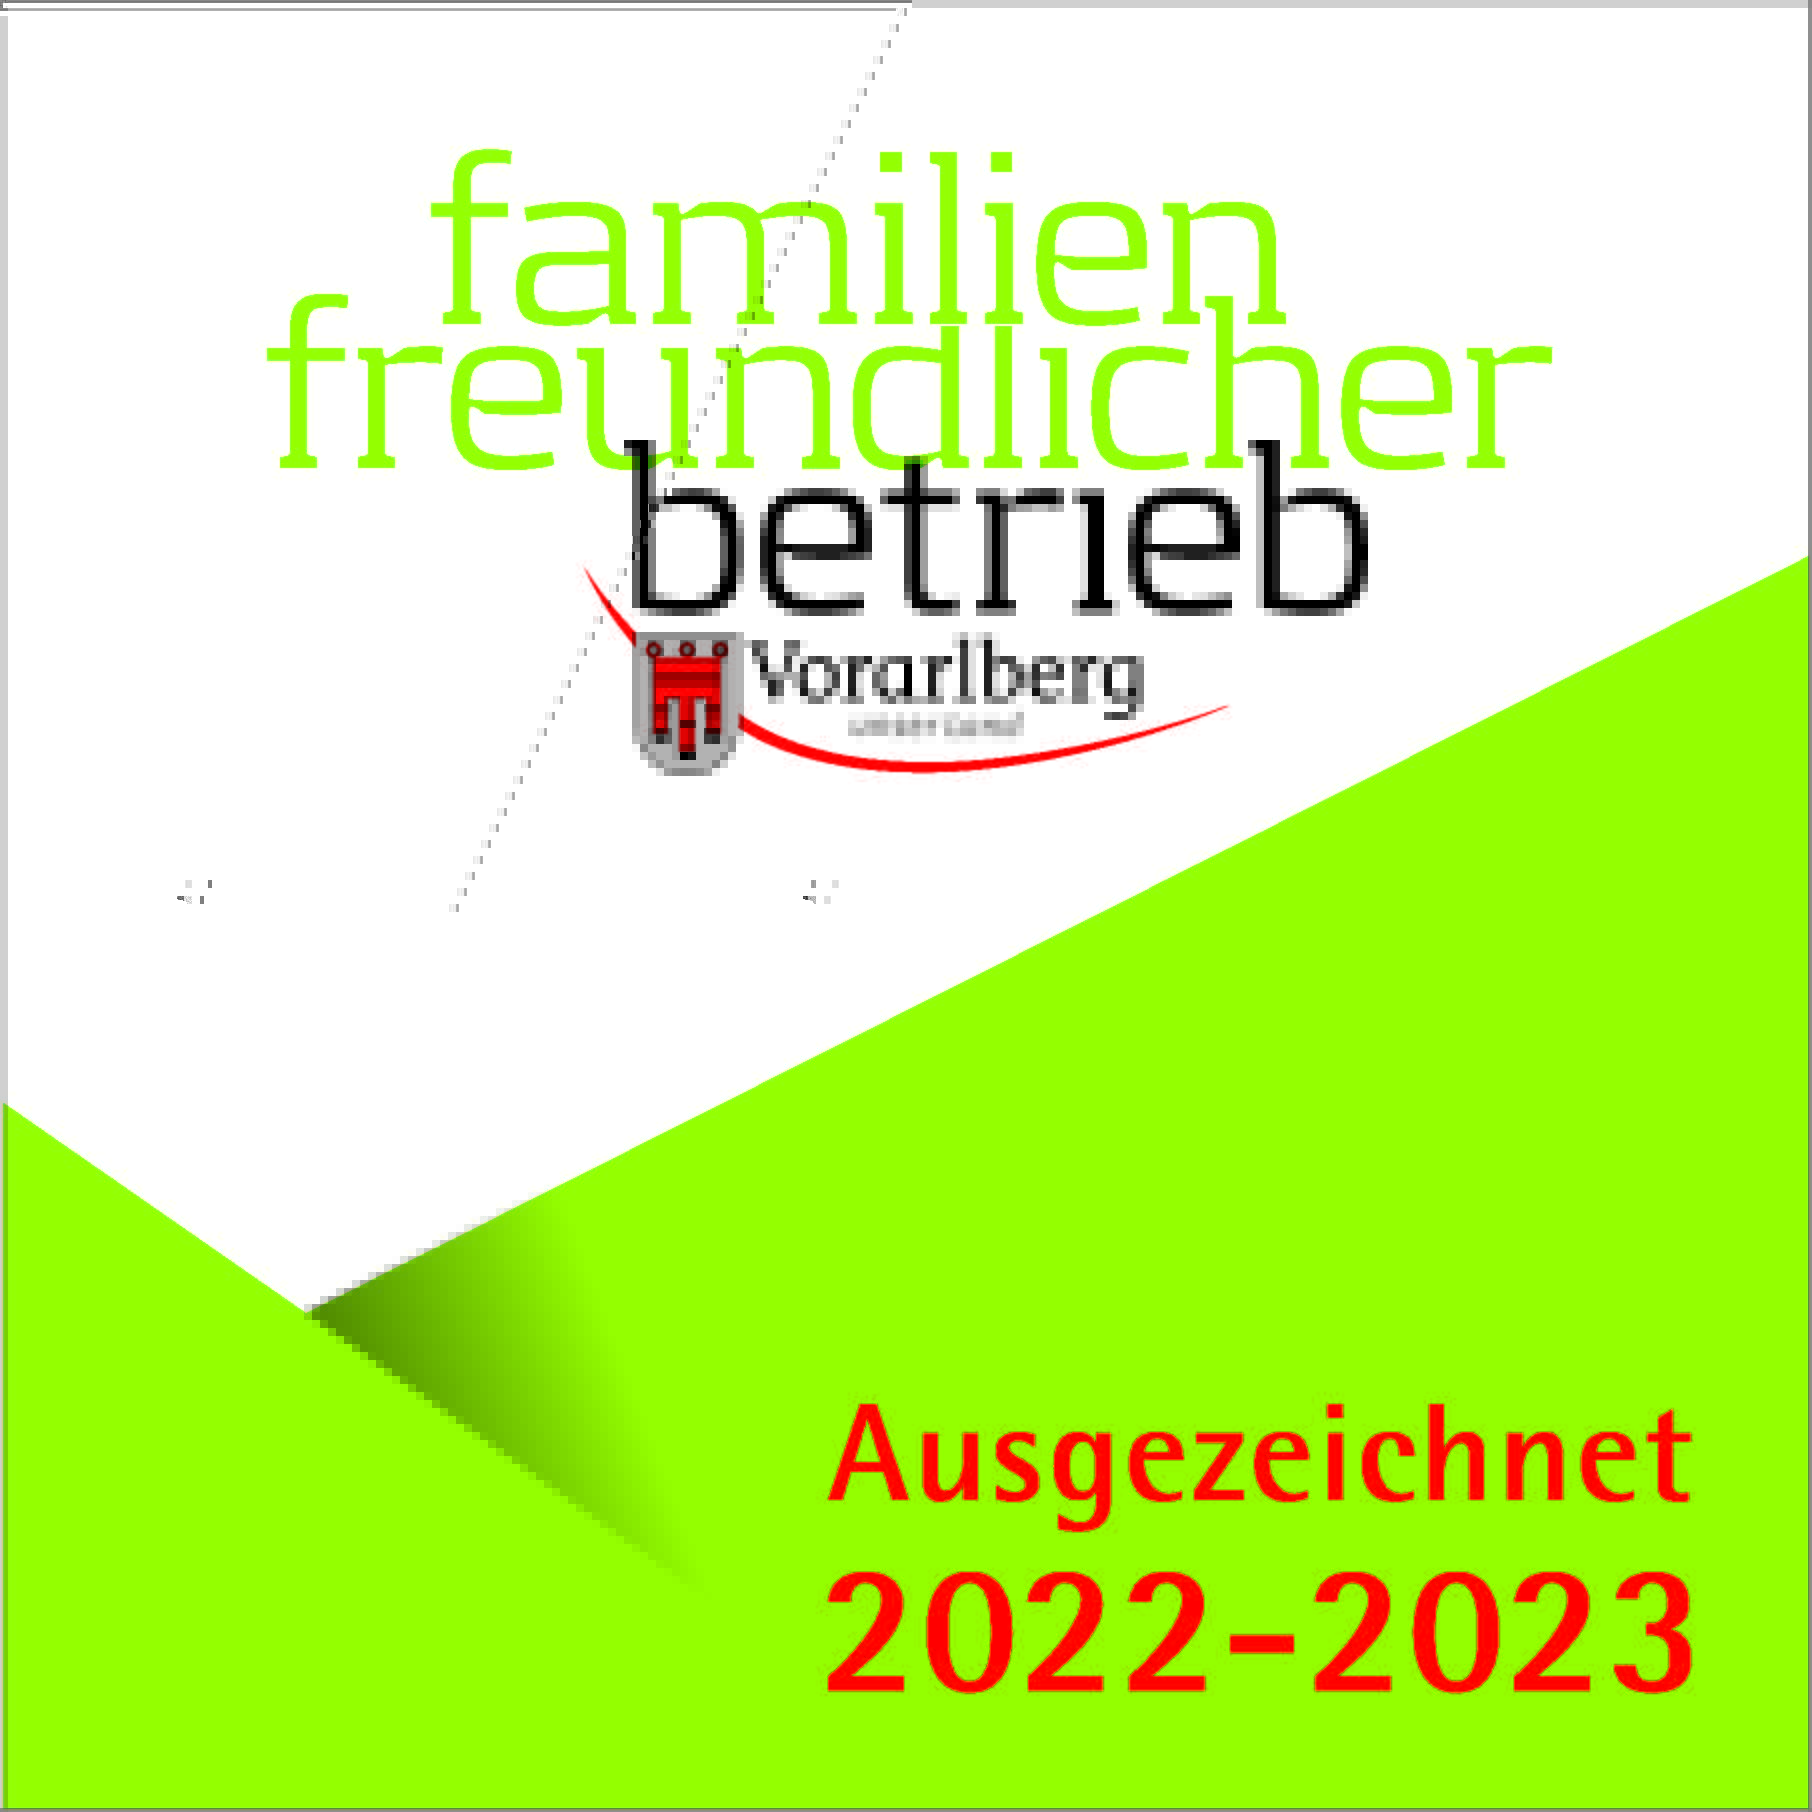 https://www.jupident.at/wp-content/uploads/2022/02/Familienfreundlicher-Betrieb-Guetesiegel_2022_2023_23x23cm_CMYK_1.jpg